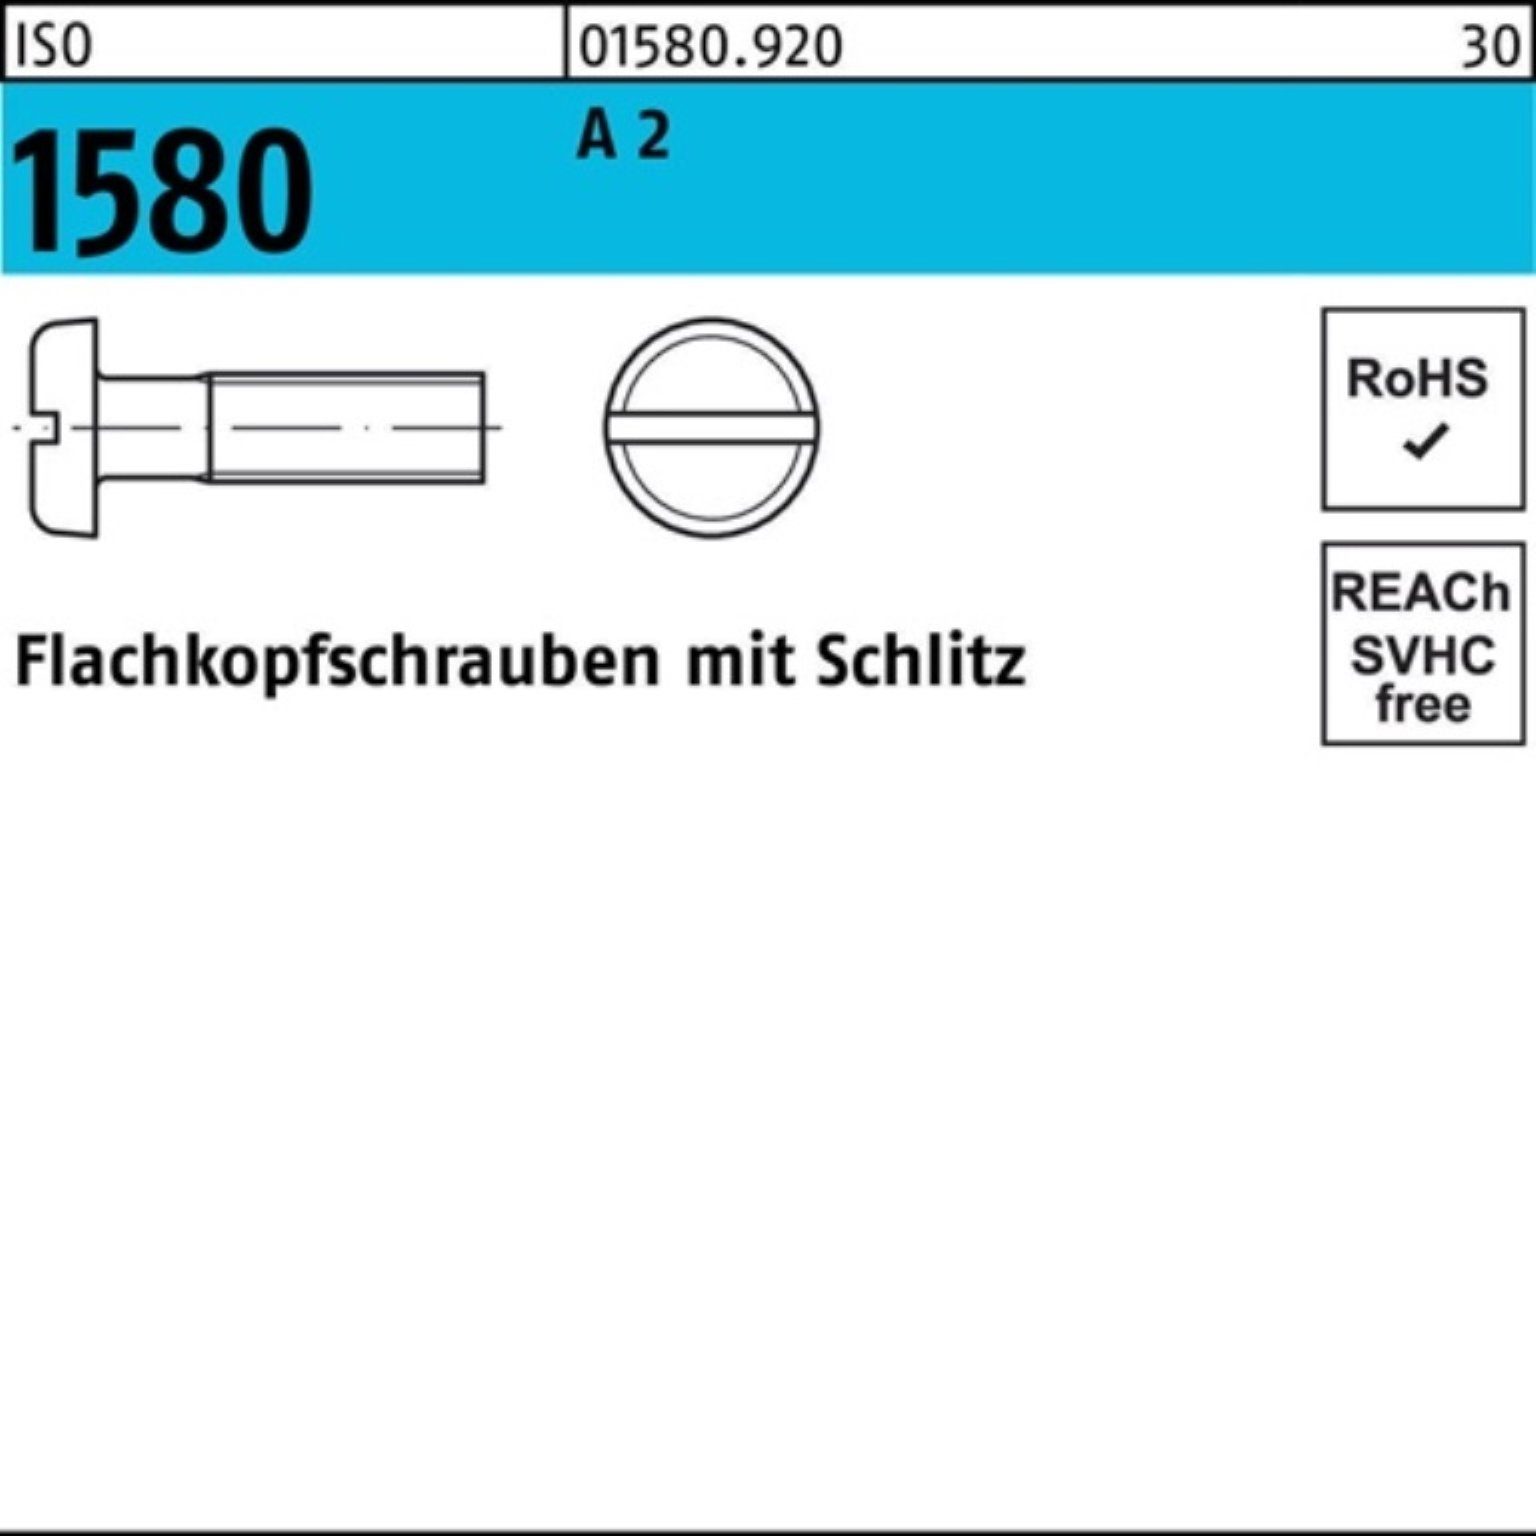 Stück Flachkopfschraube 1000er ISO A Schlitz 1580 1000 12 Pack Reyher Schraube M3x 2